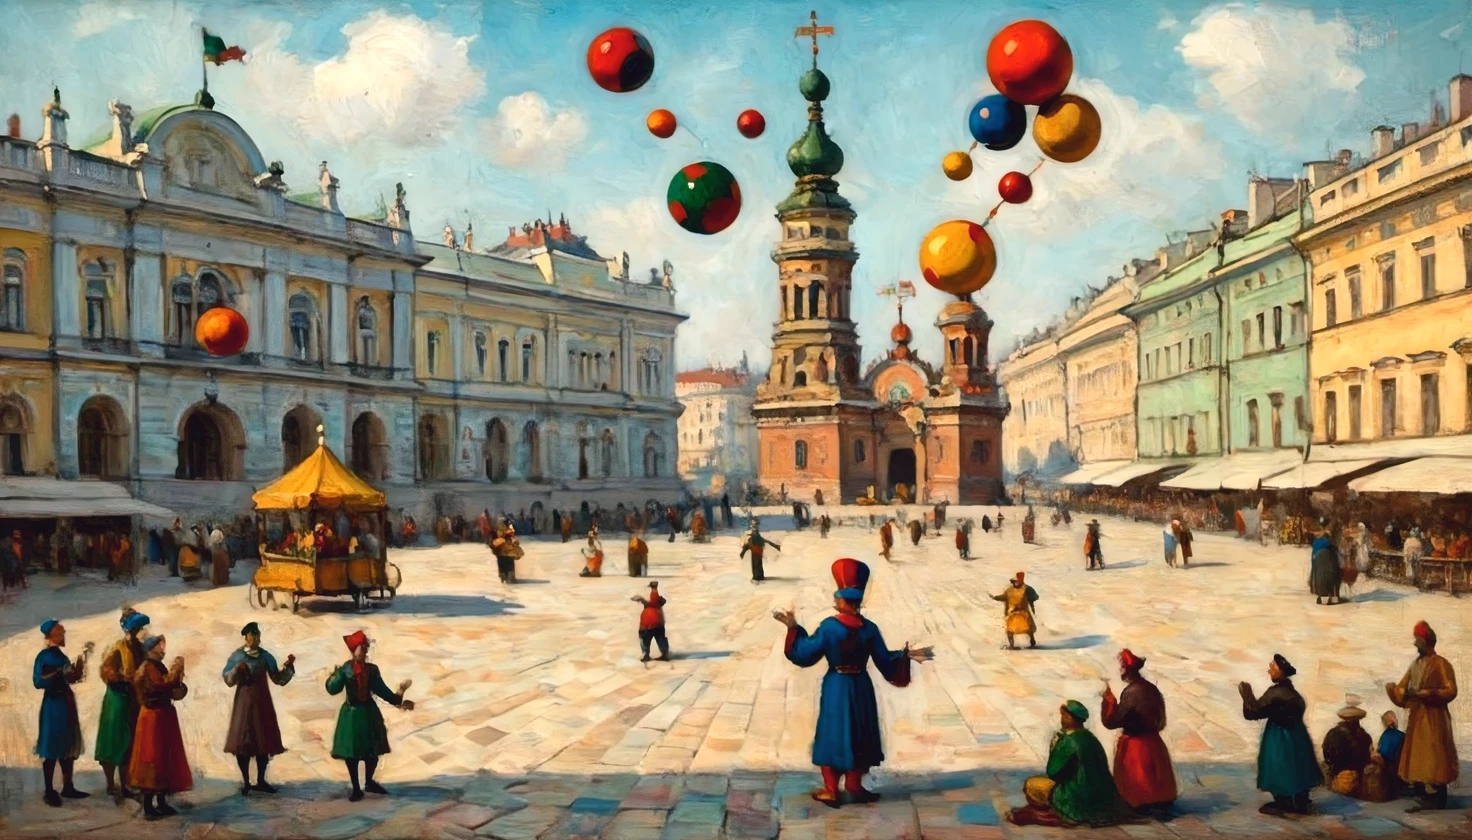 Ölgemälde auf Leinwand vom Künstler Wassily Kandinsky, ((Hofnarr-Jongleur)) auf dem Schlossplatz von St.. Petersburg, der Narr (Jonglieren):1.5 bunte Bälle, multi-colored balls rotate around der Narr, volle Übereinstimmung mit dem Stil von Wassily Kandinsky